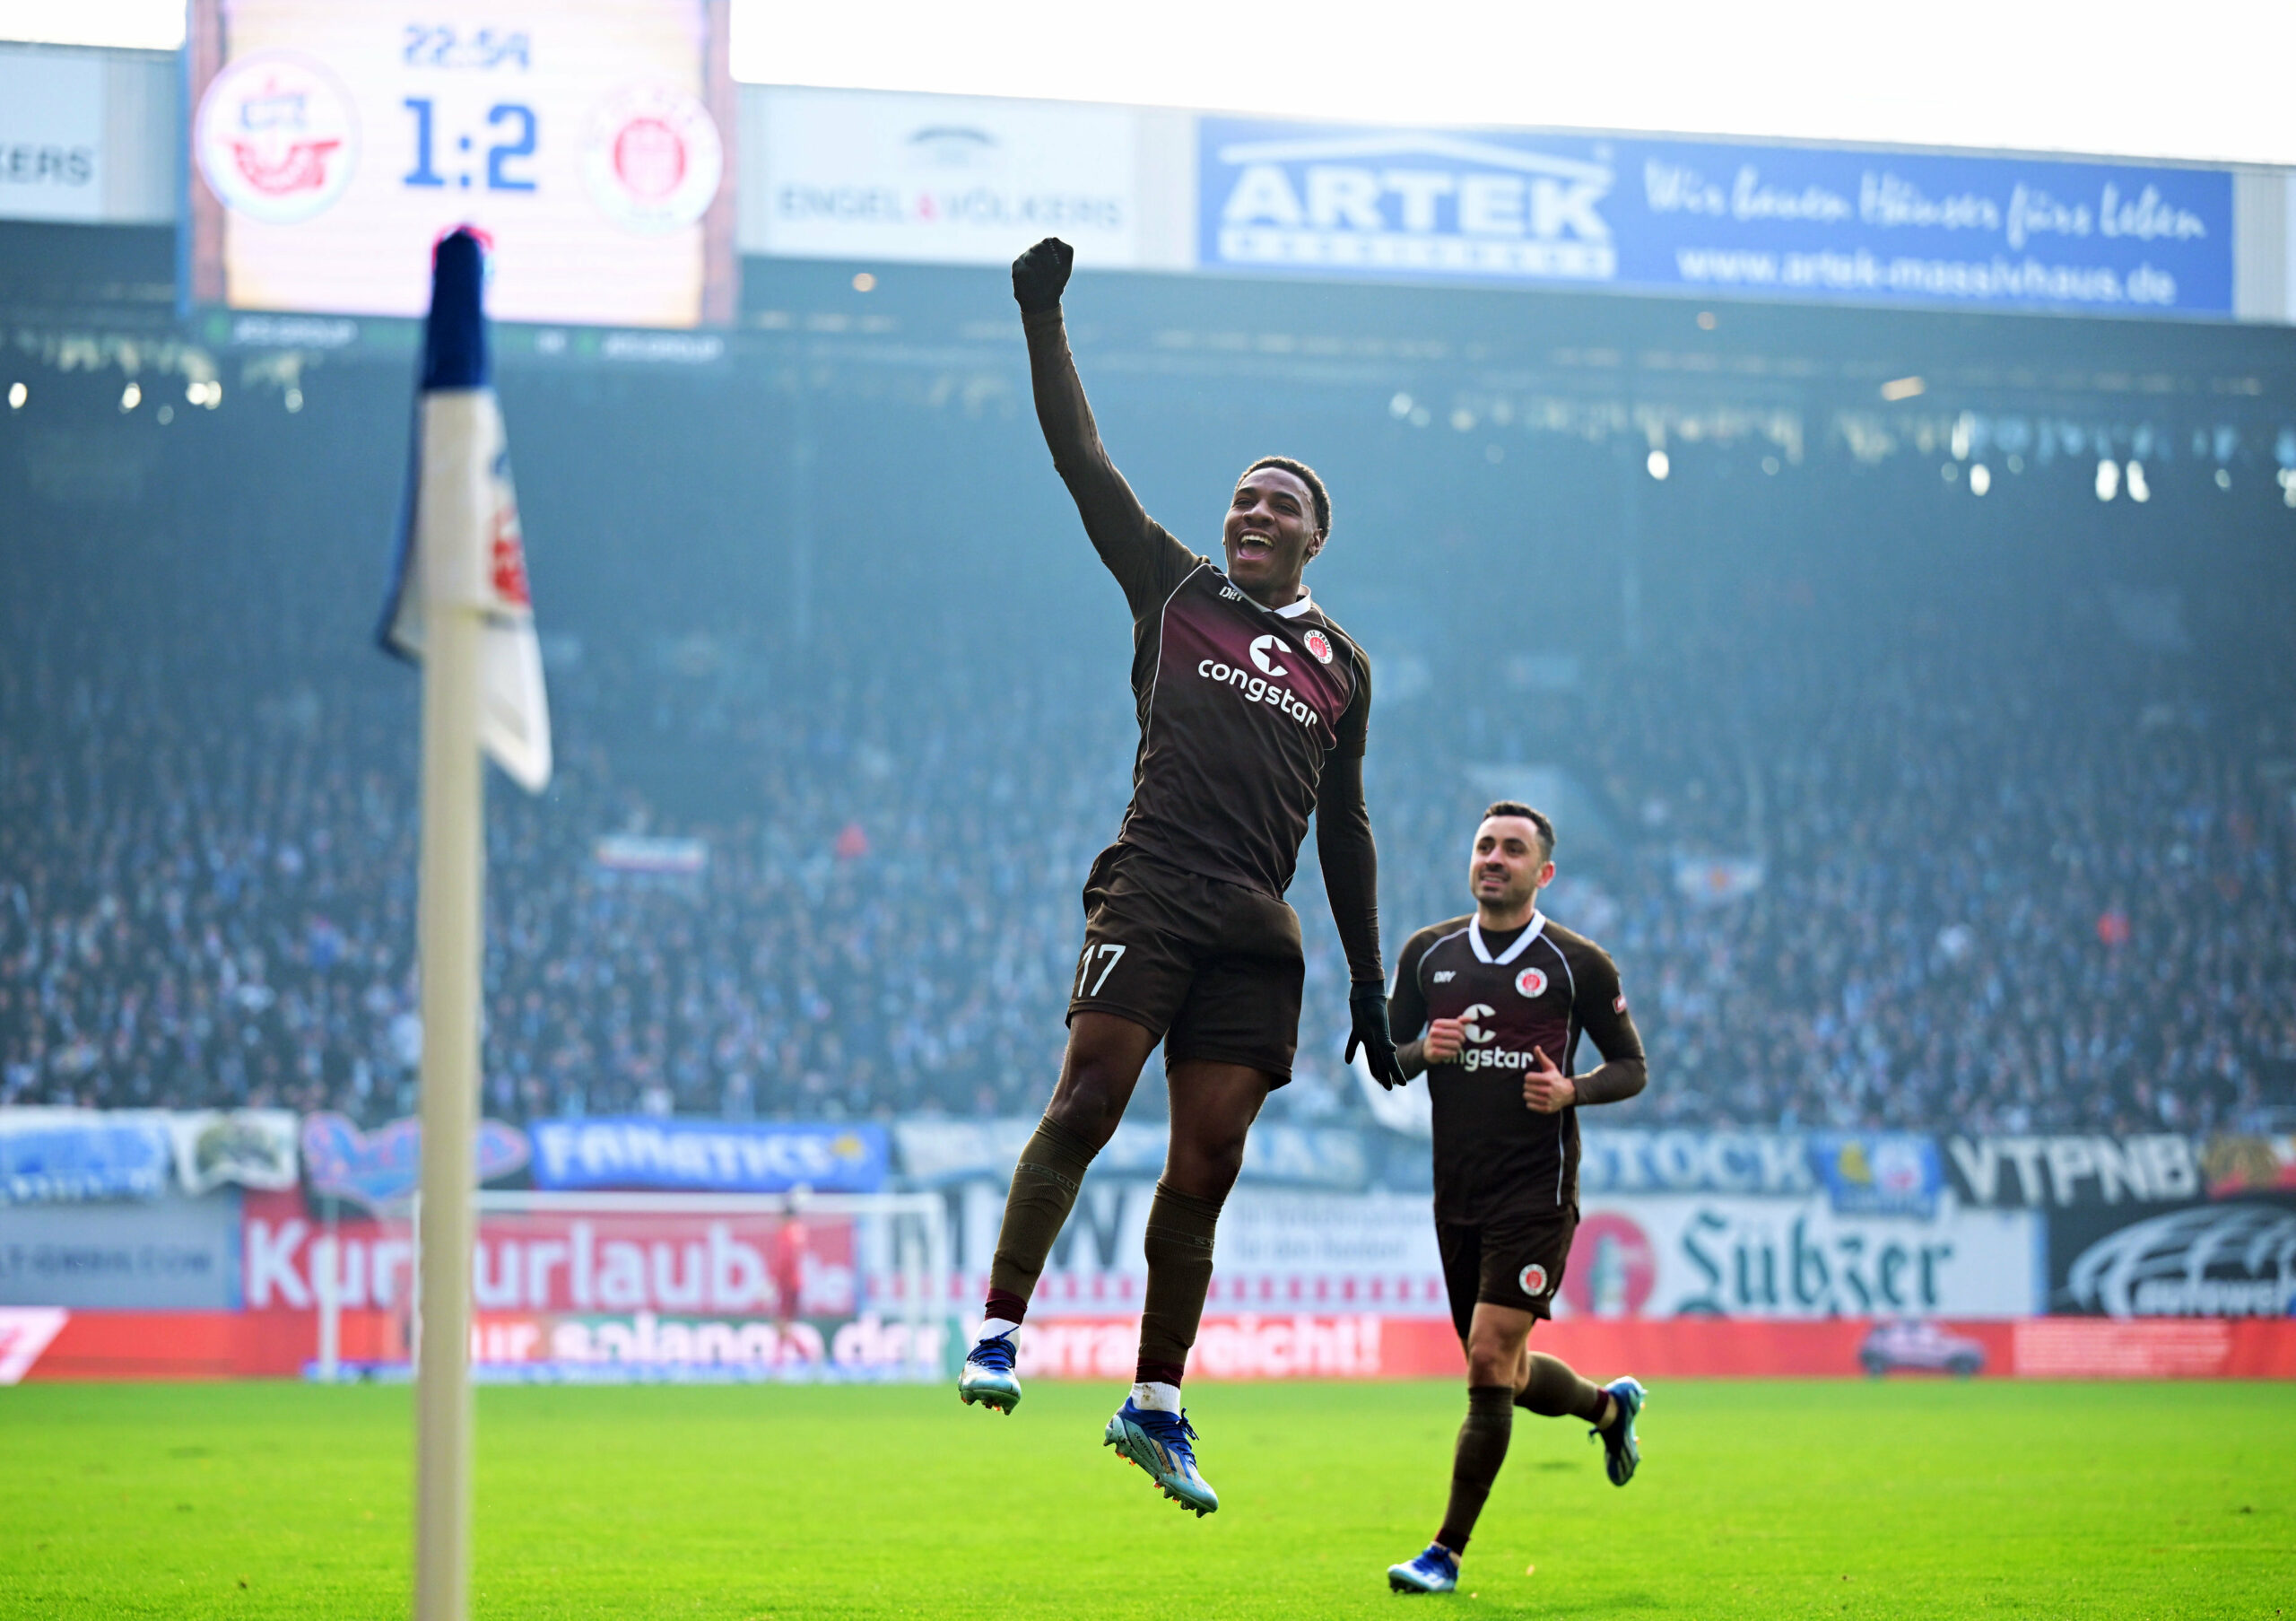 Oladapo Afolayan springt in die Luft und jubelt, sein Mitspieler läuft hinter ihm